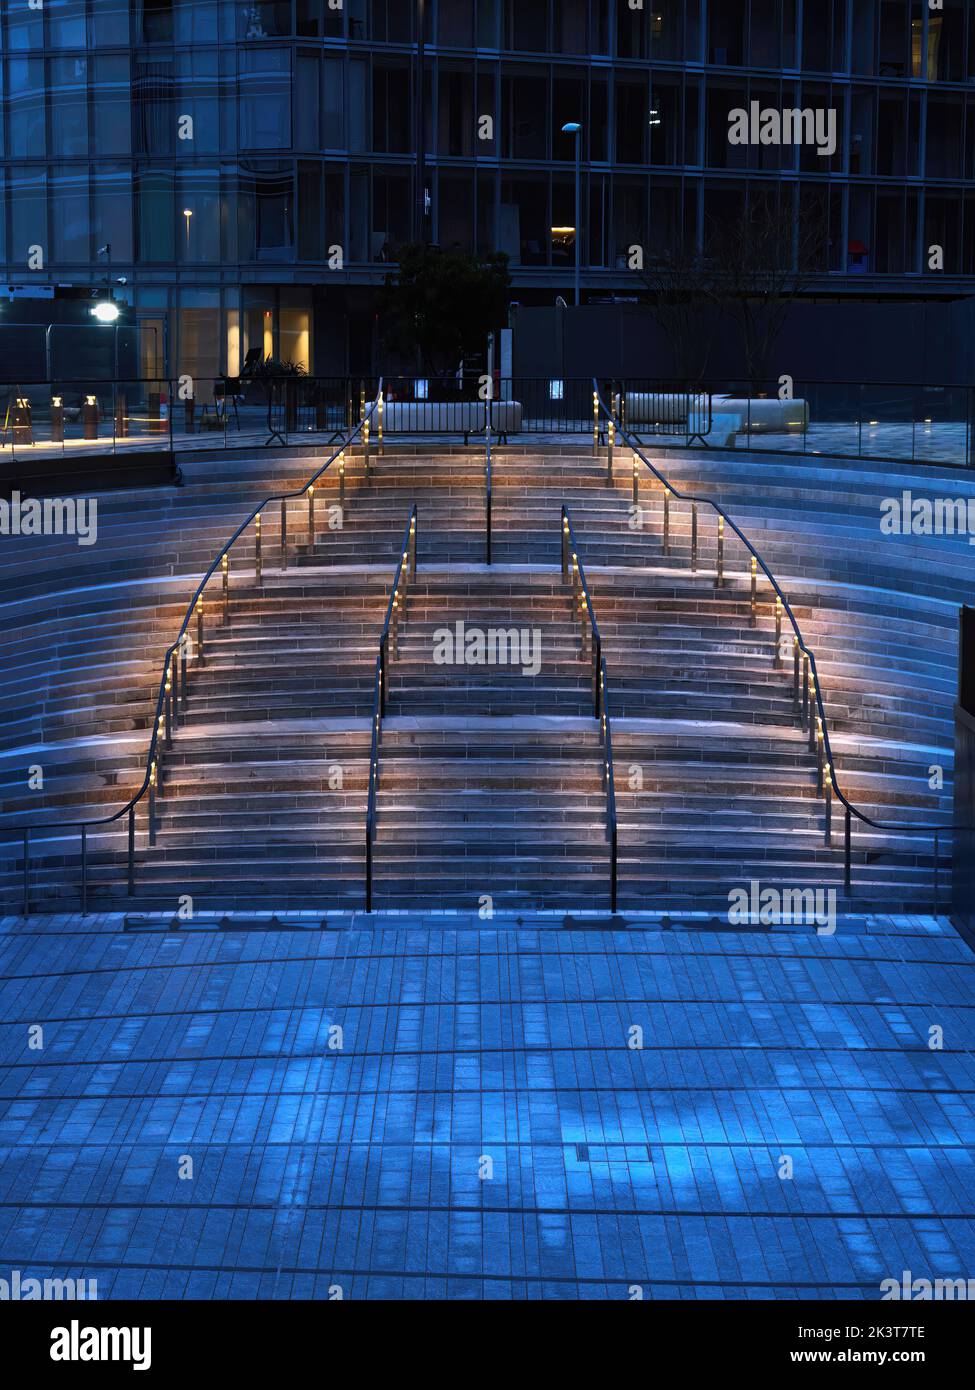 Das kühle, blaue Licht des Winterabends wird von einem warmen, glühenden Regenlicht auf einer Amphitheatreppe des neu entwickelten Battersea Power Station durchbrochen. Stockfoto